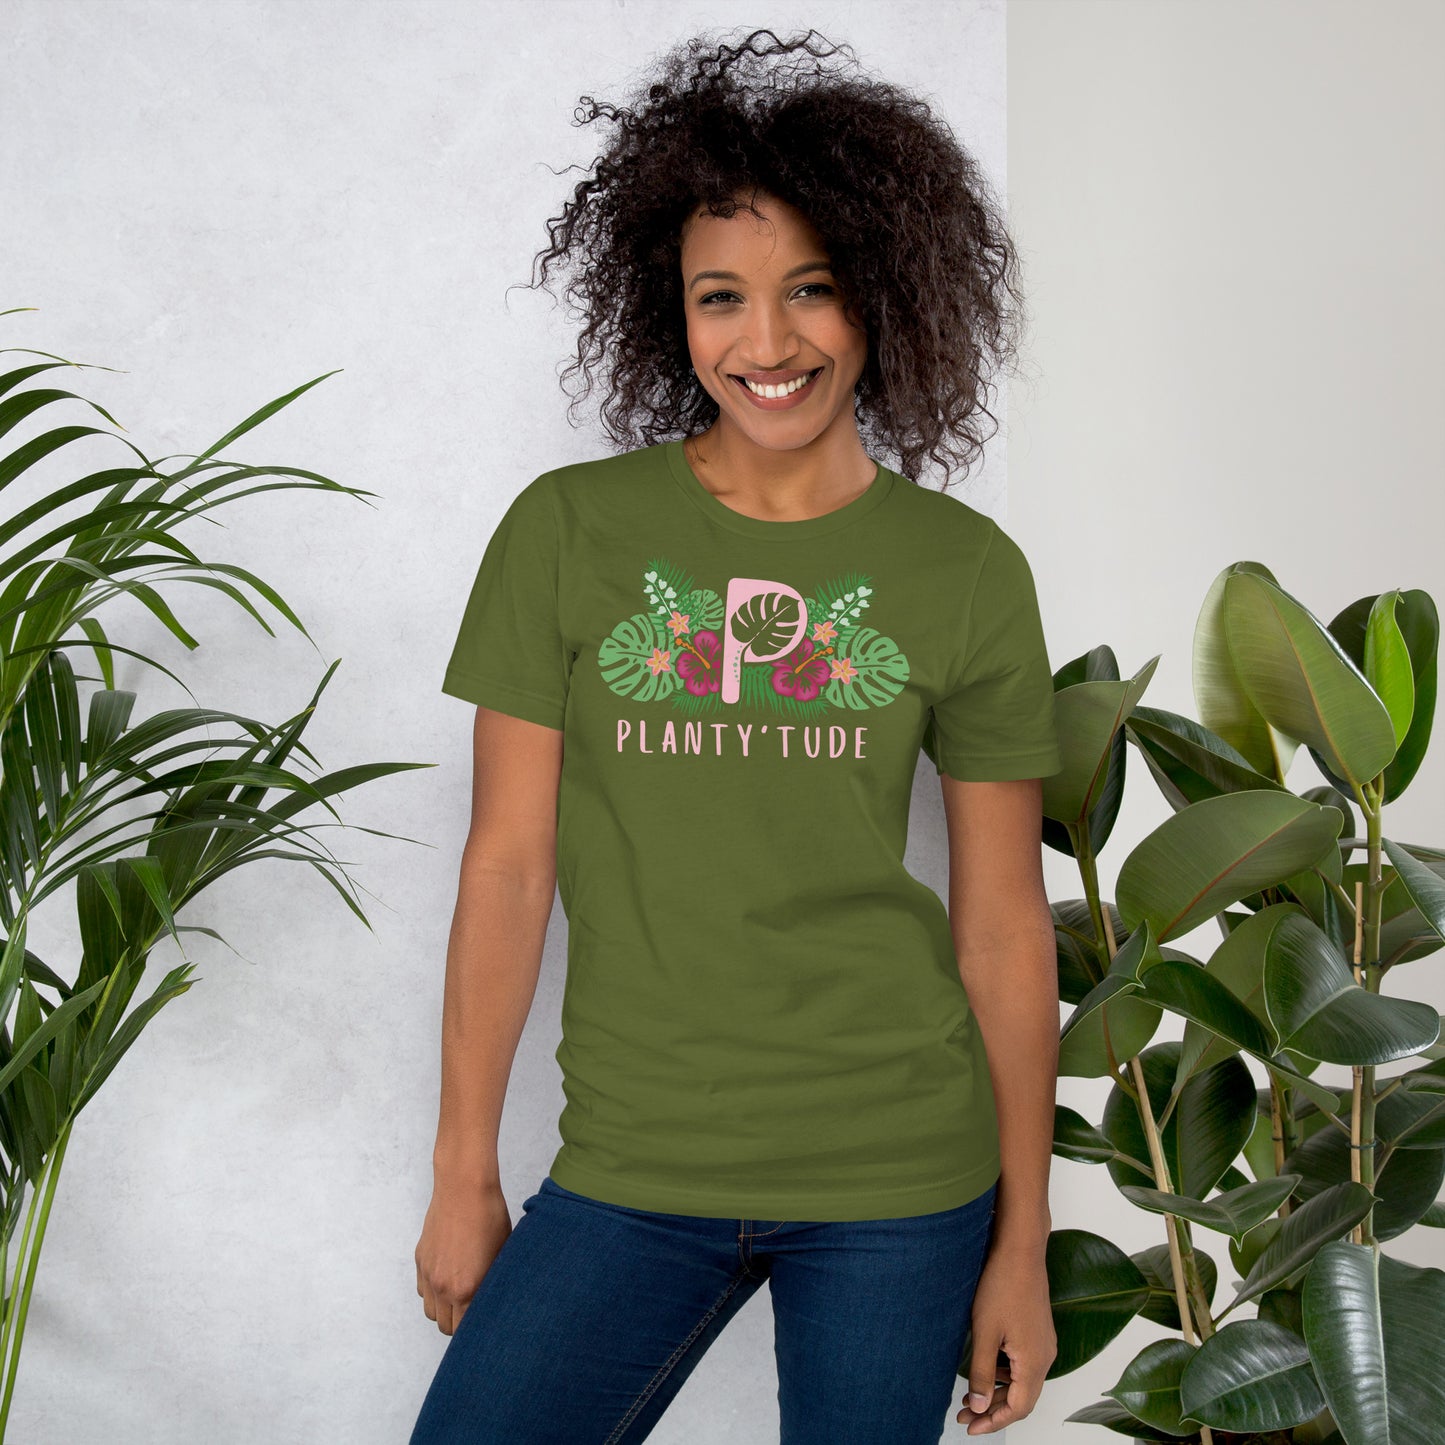 Planty'tude's Unisex t-shirt